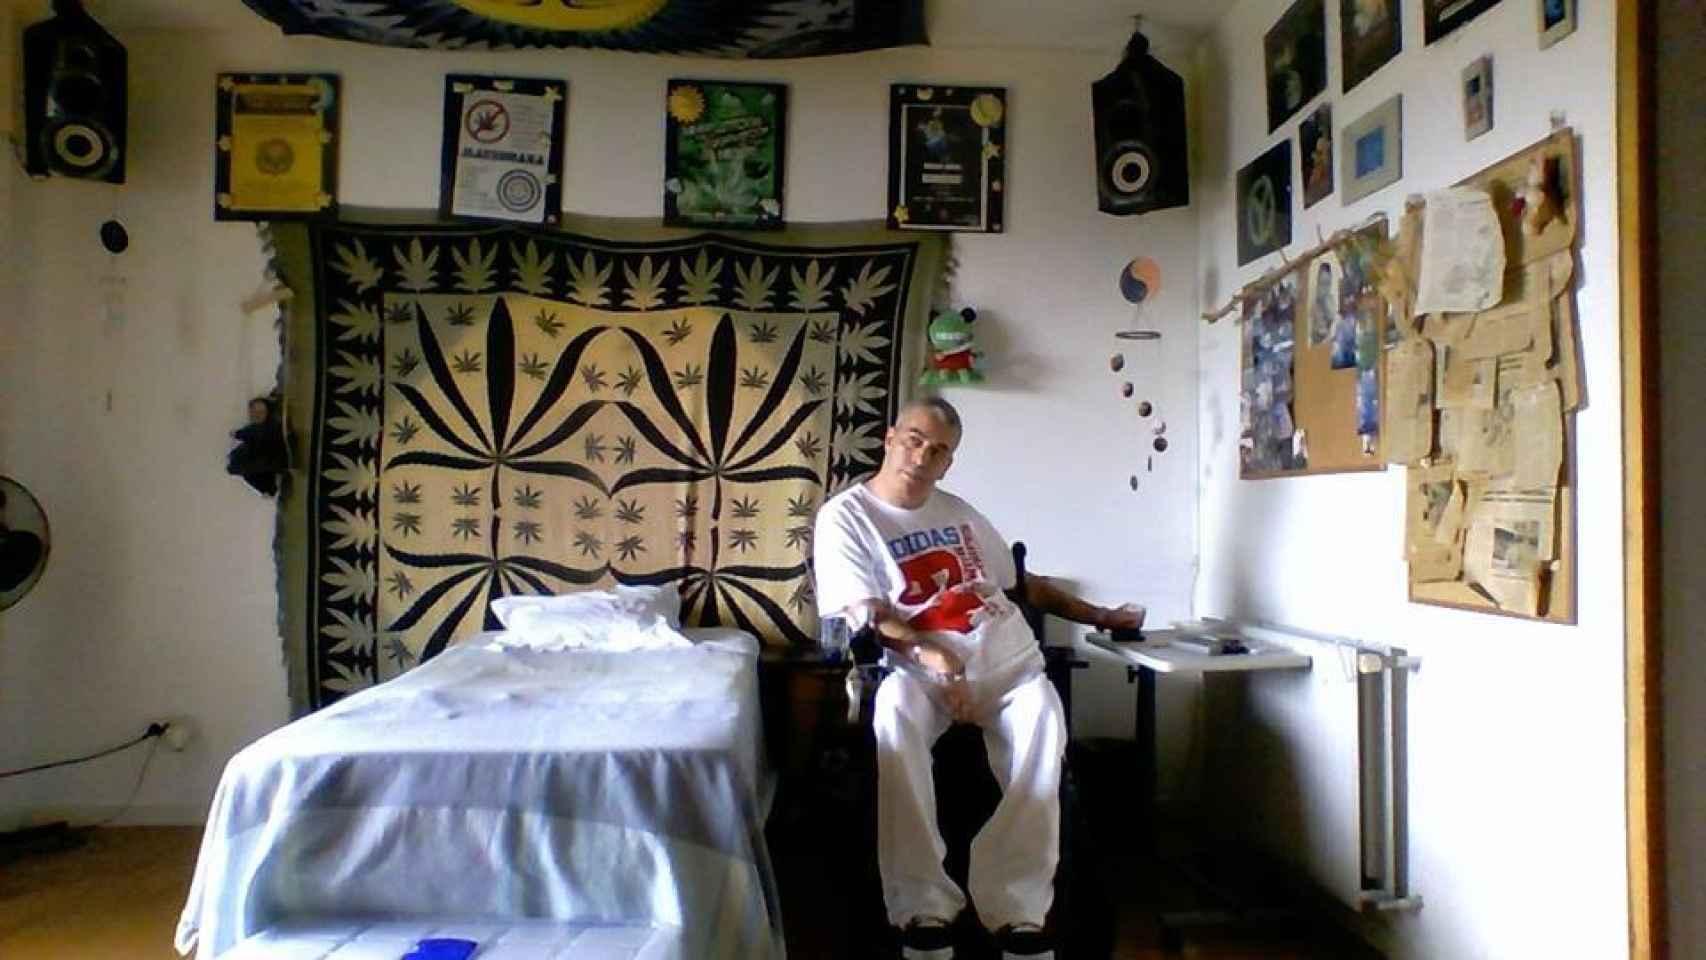 La habitación de Juan está decorada con toda clase de amuletos y pósters que hacen referencia a la marihuana y la cultura rastafari.